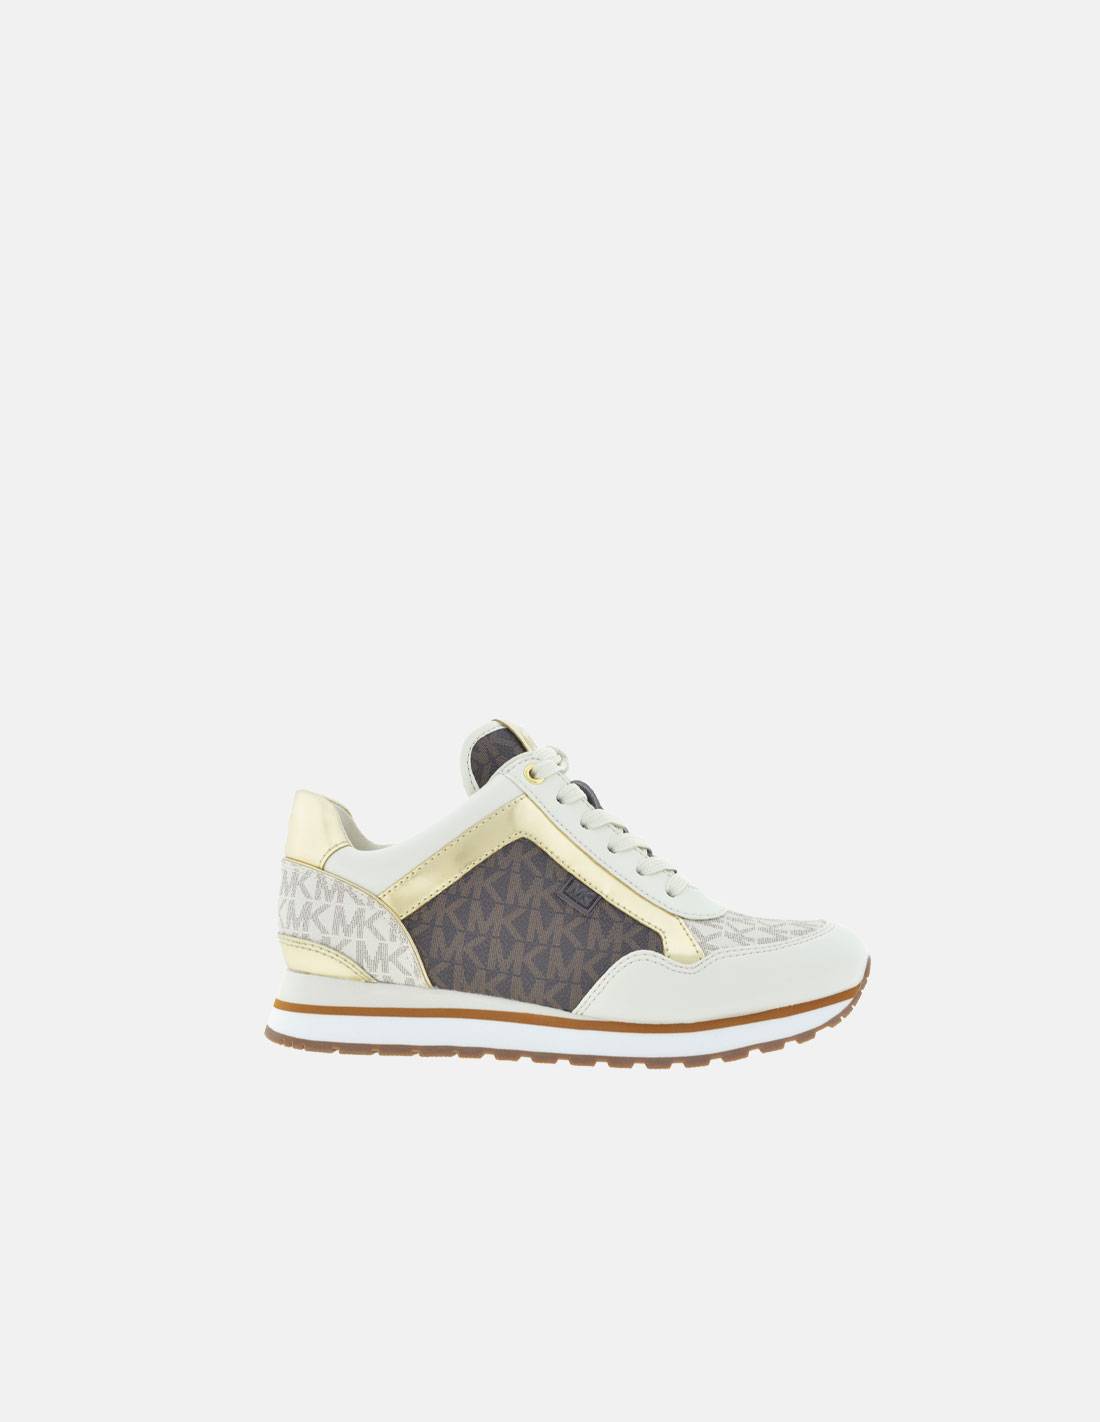 Michael Kors Women039s Brown Logo  Gold Trim Sneakers Size 65M  eBay